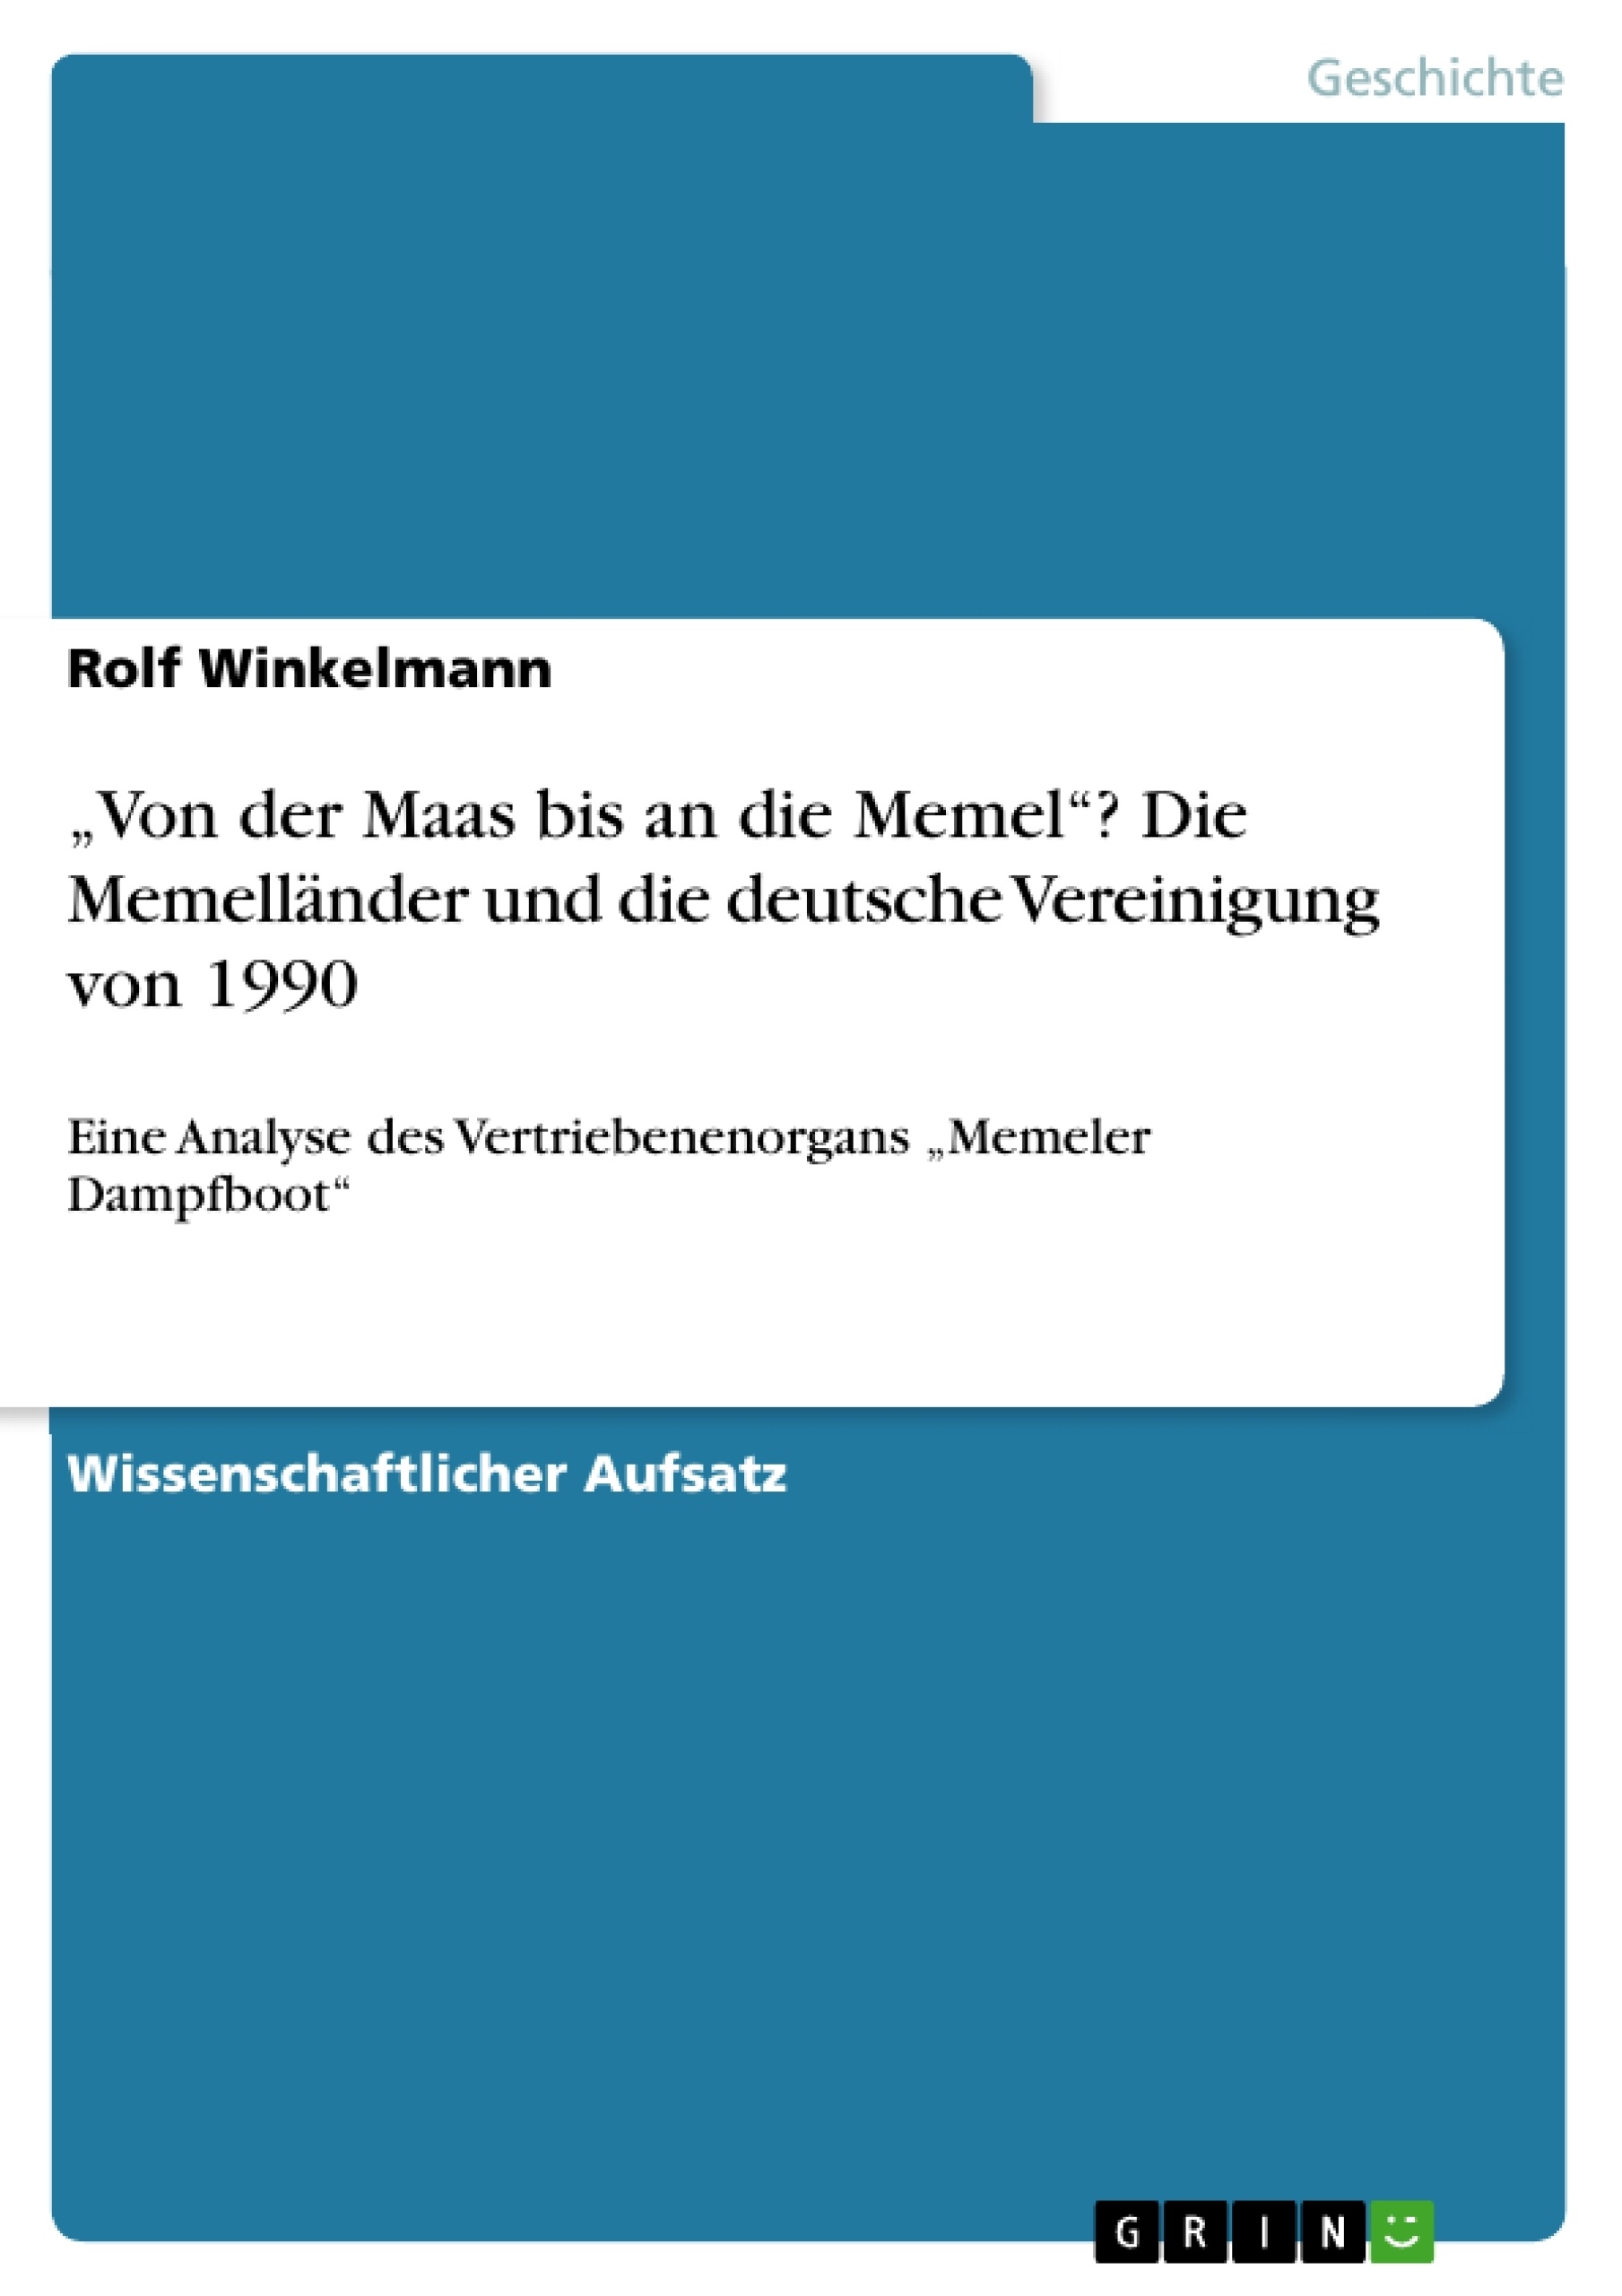 Título: „Von der Maas bis an die Memel“? Die Memelländer und die deutsche Vereinigung von 1990